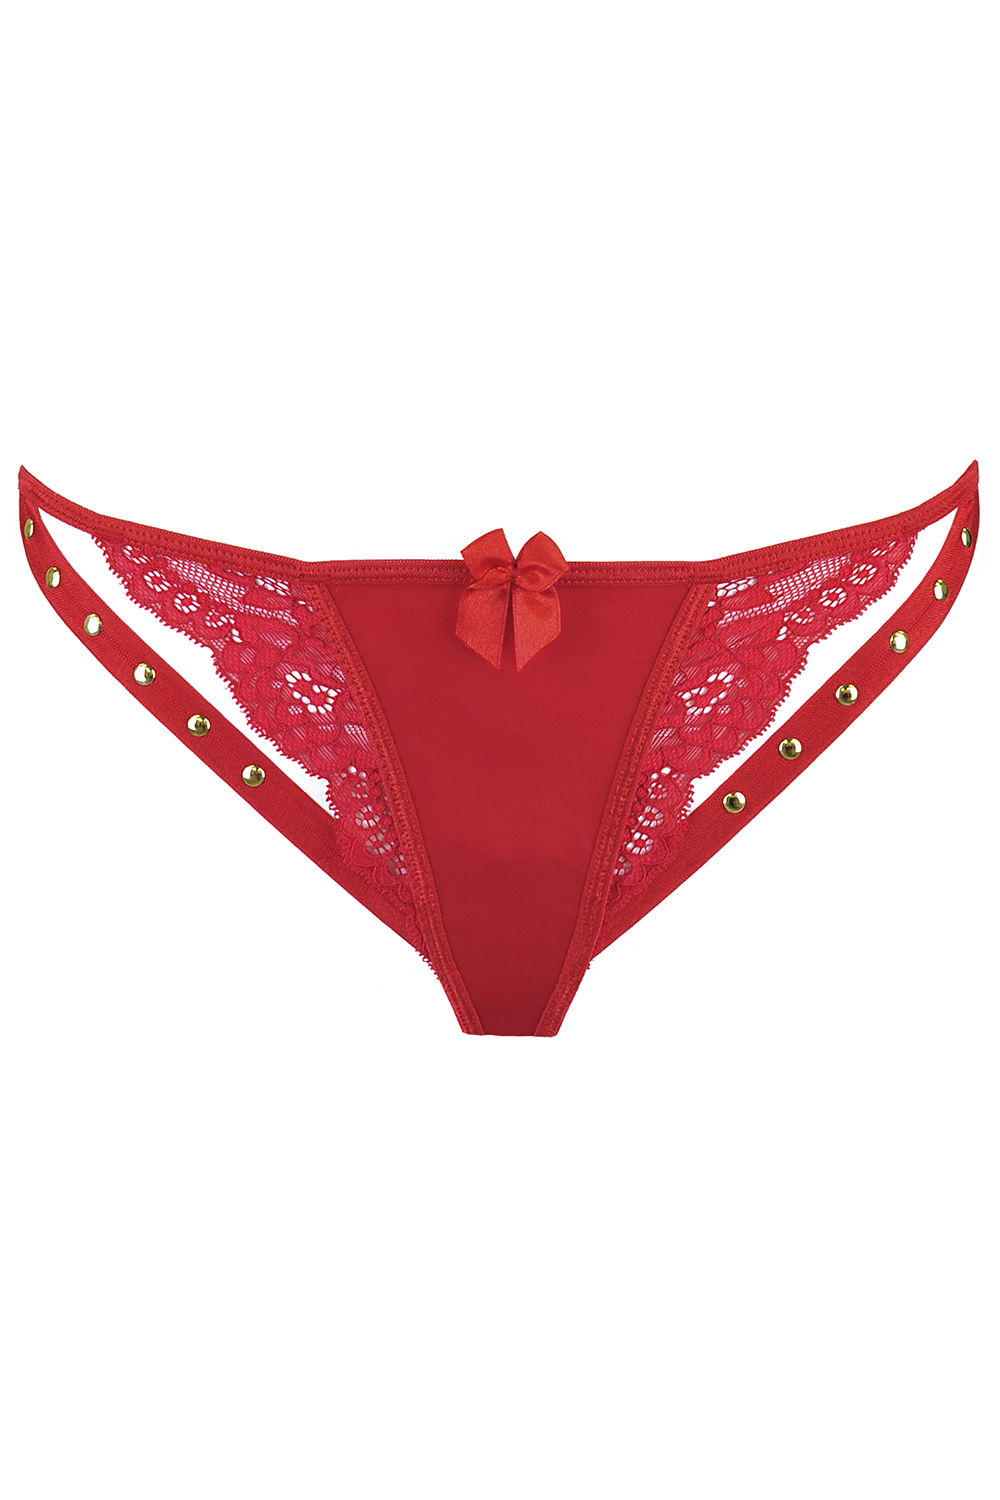 Axami Dame String Reizwäsche Spitze Nieten Verführerisch Sexy Unterwäsche  V-9778, Rot